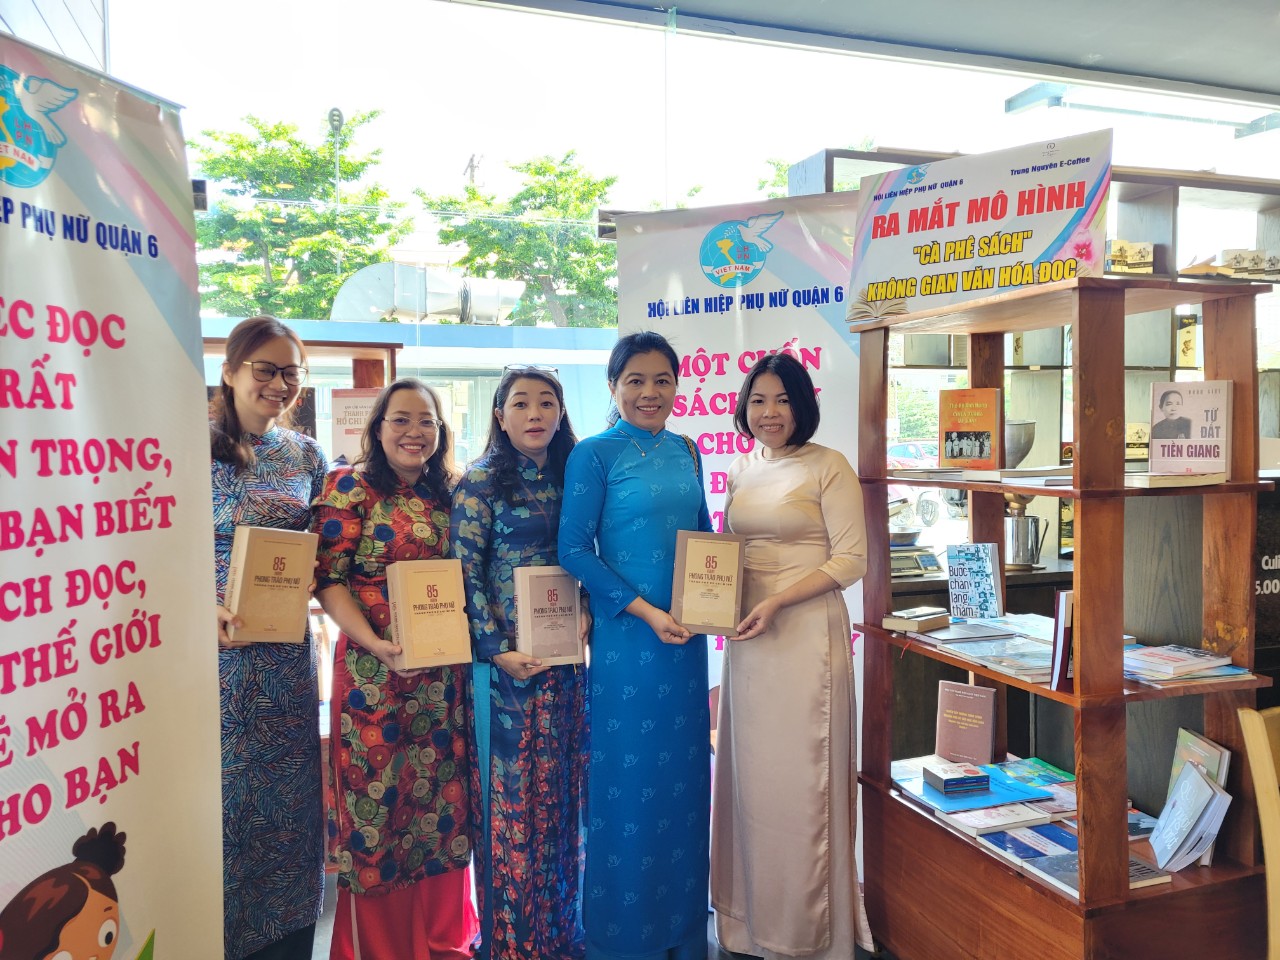 Chương trình cũng đã ra mắt mô hình Cà phê sách - Không gian văn hóa đọc tại cửa hàng Cà phê Trung Nguyên E - Coffee do bà Nguyễn Thị Ngọc Trâm (bìa phải) làm chủ